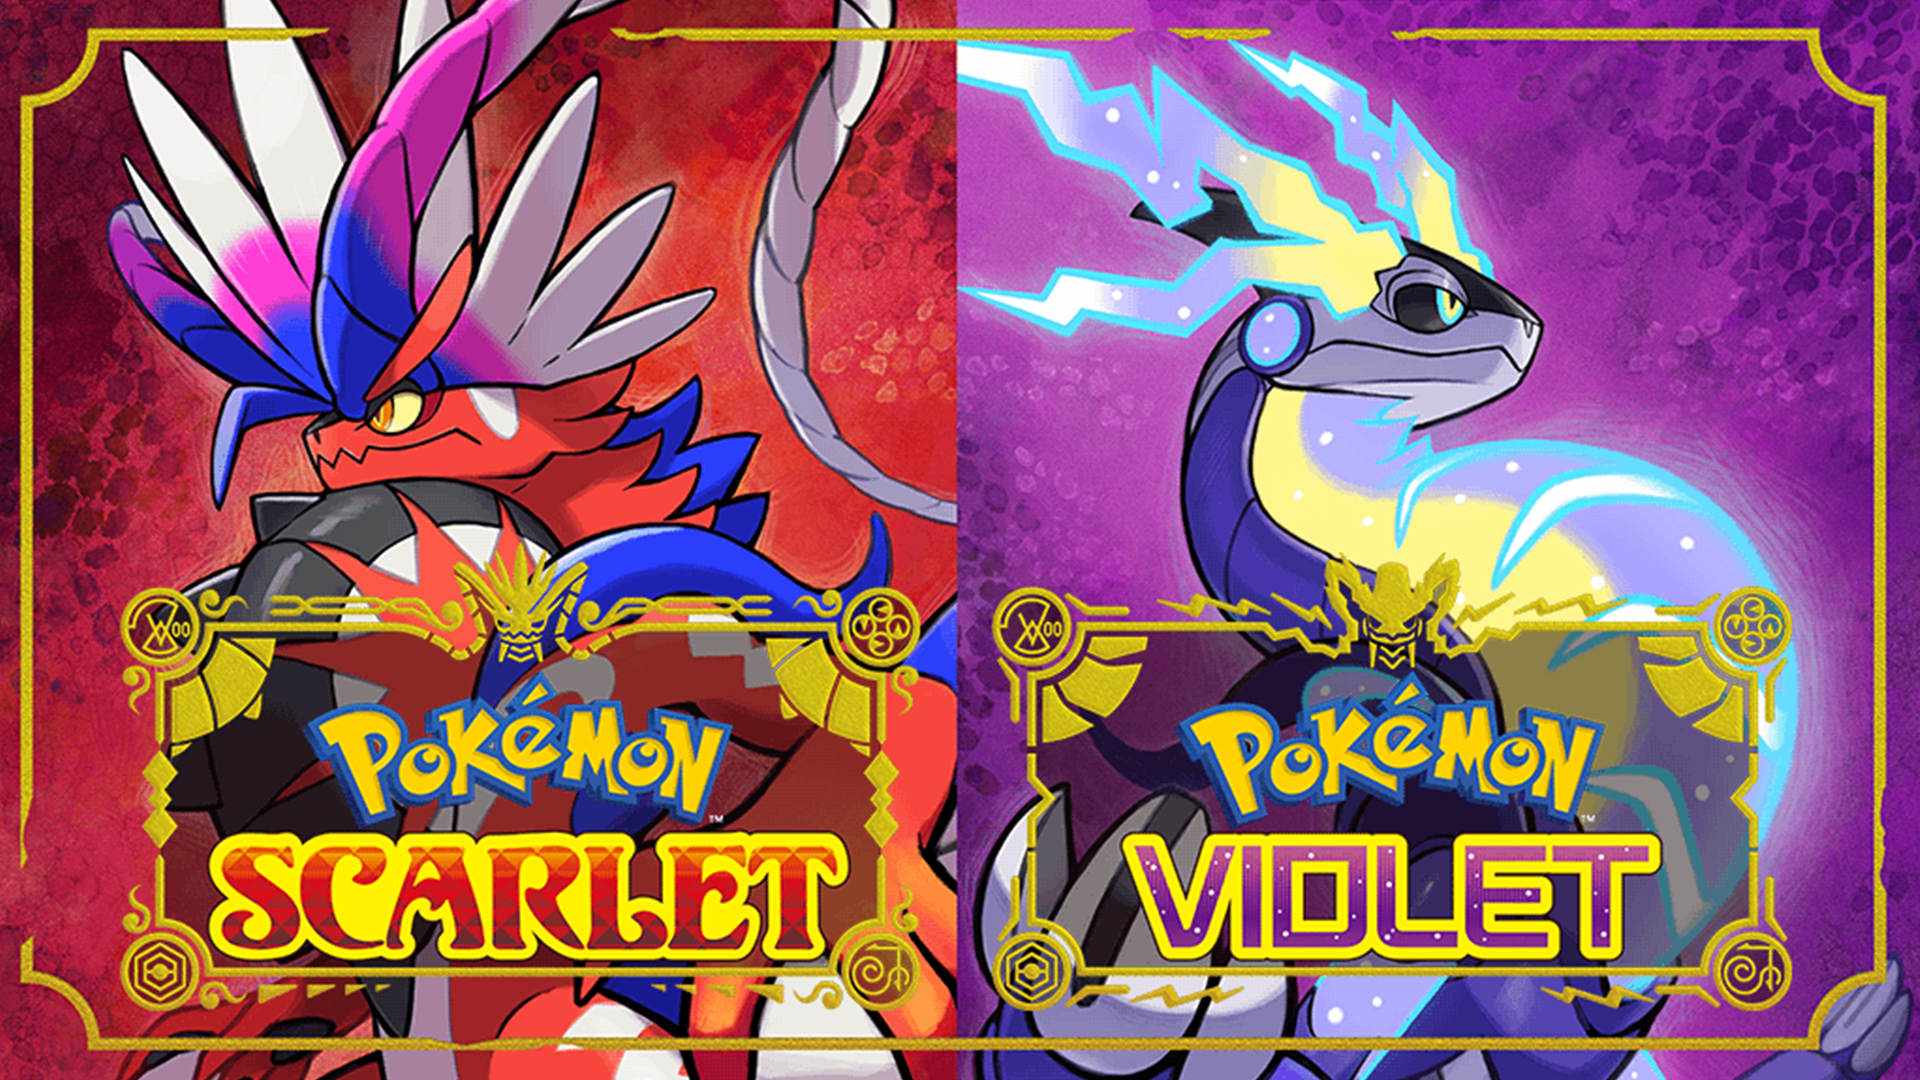 Pokémon Scarlet and Violet review: Pokémon leveled up, but it's